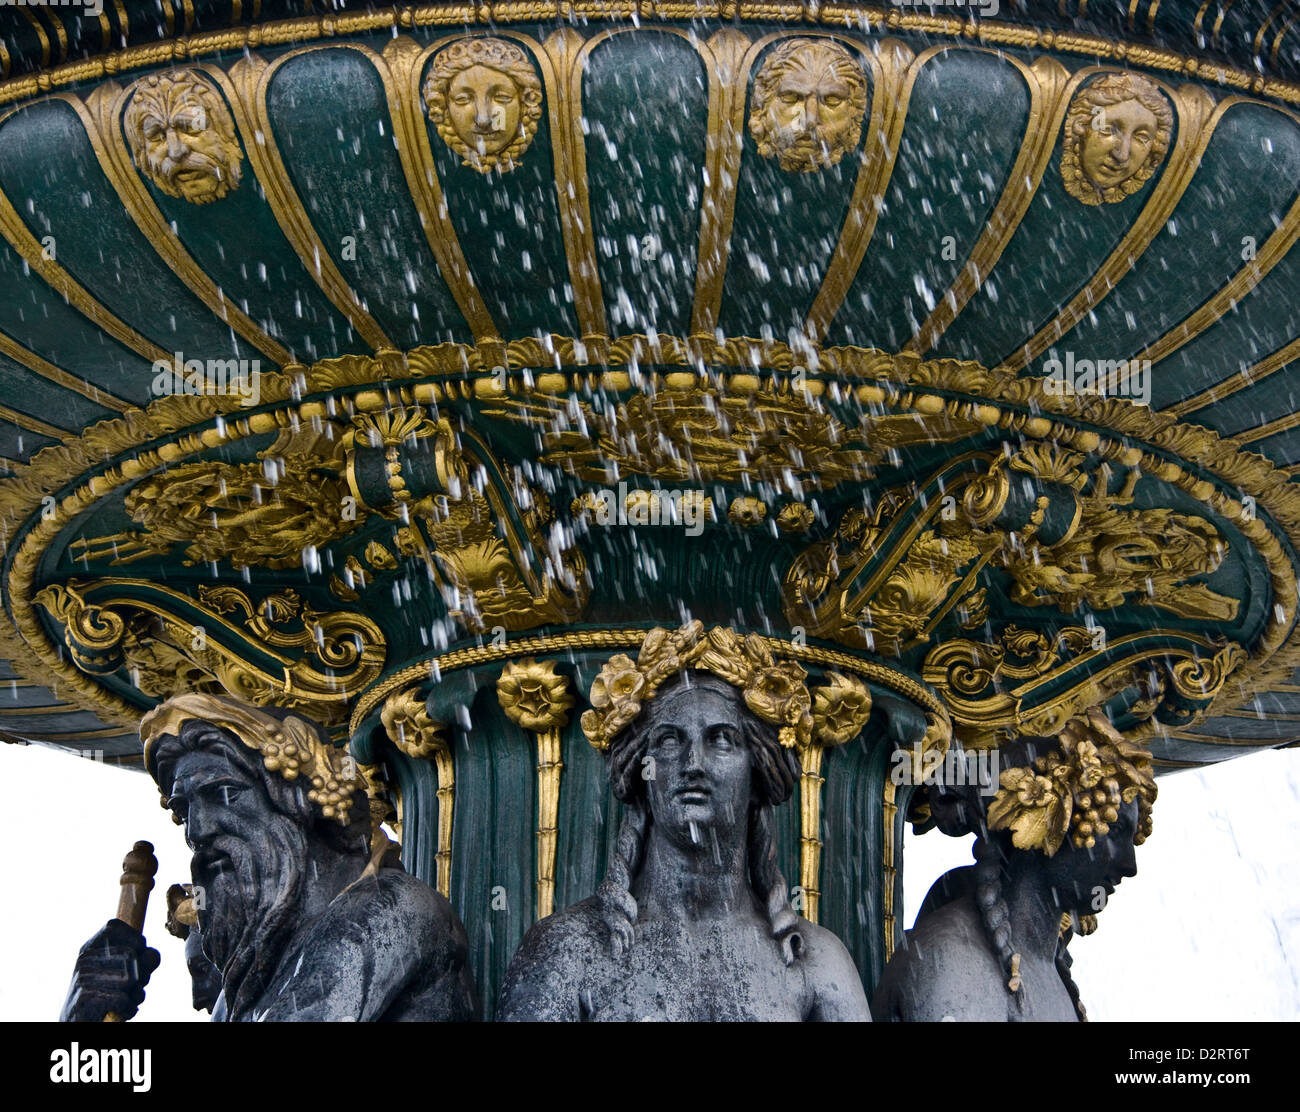 Fontaines de la Concorde Place de la Concorde Paris France Europe Stock Photo